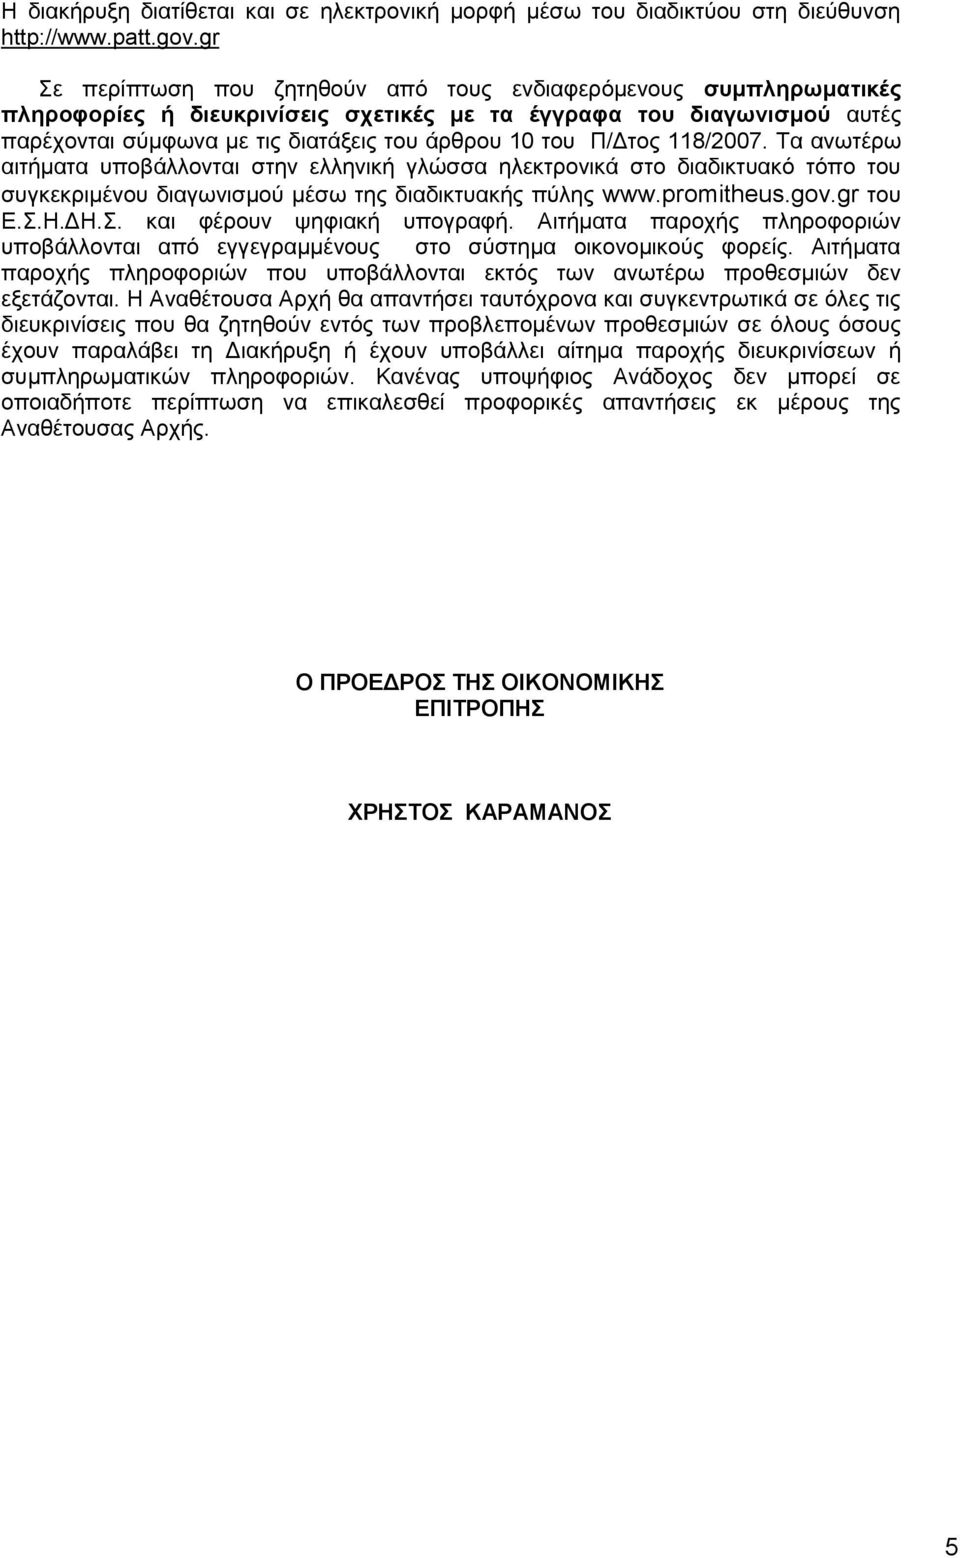 Π/Δτος 118/2007. Τα ανωτέρω αιτήματα υποβάλλονται στην ελληνική γλώσσα ηλεκτρονικά στο διαδικτυακό τόπο του συγκεκριμένου διαγωνισμού μέσω της διαδικτυακής πύλης www.promitheus.gov.gr του Ε.Σ.